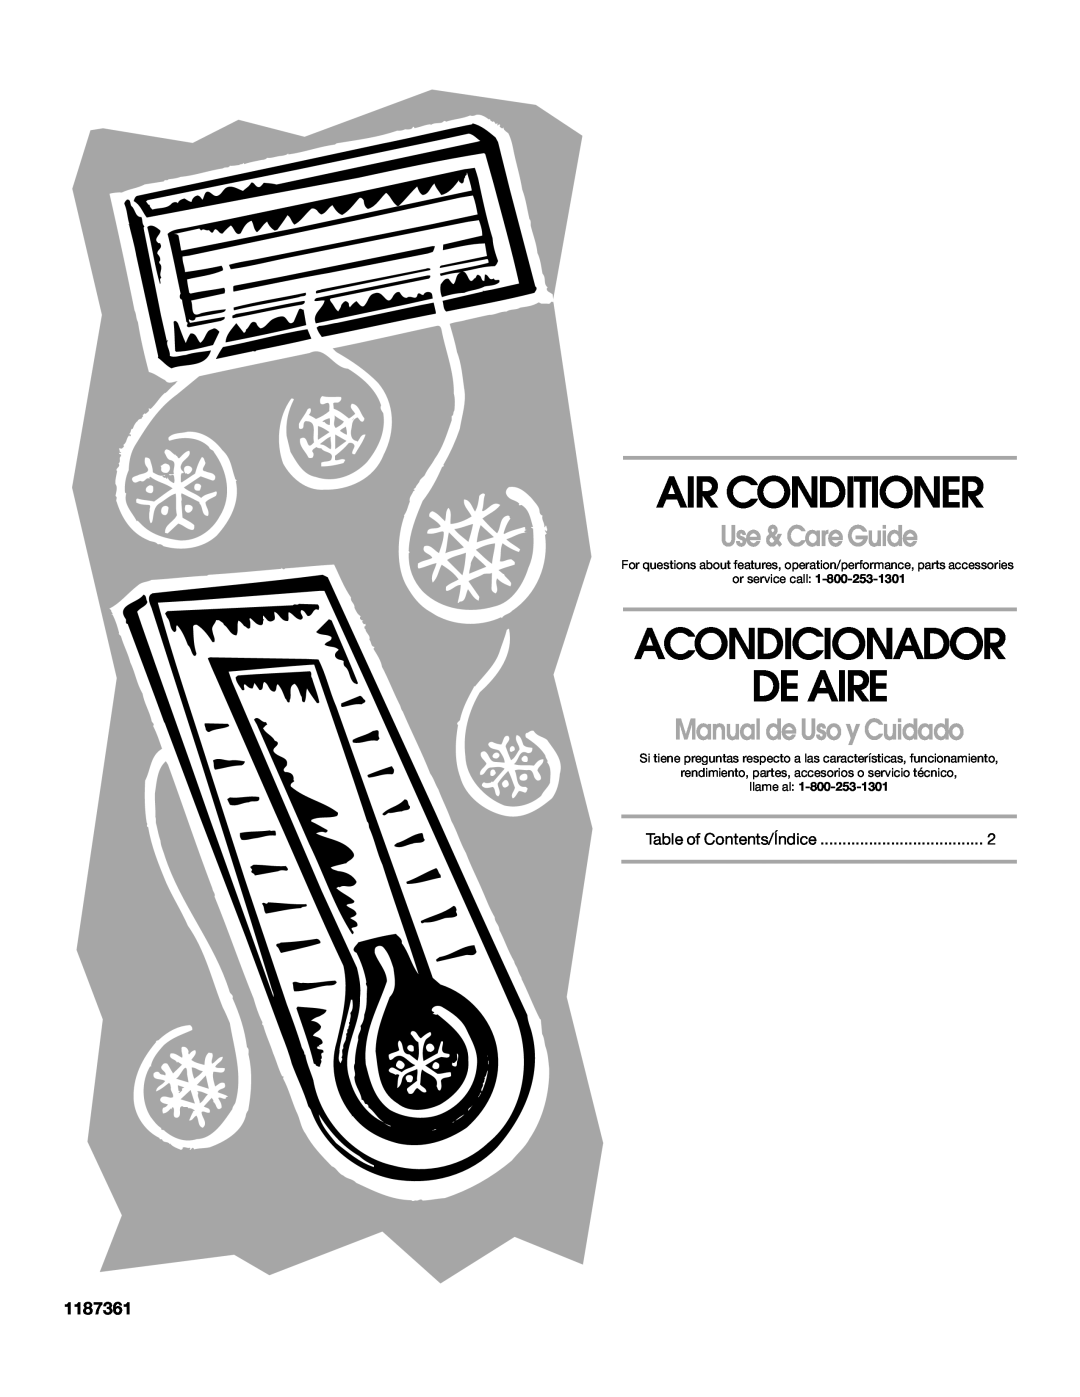 Whirlpool 1187361 manual Air Conditioner, Acondicionador De Aire, Use & Care Guide, Manual de Uso y Cuidado, llame al 